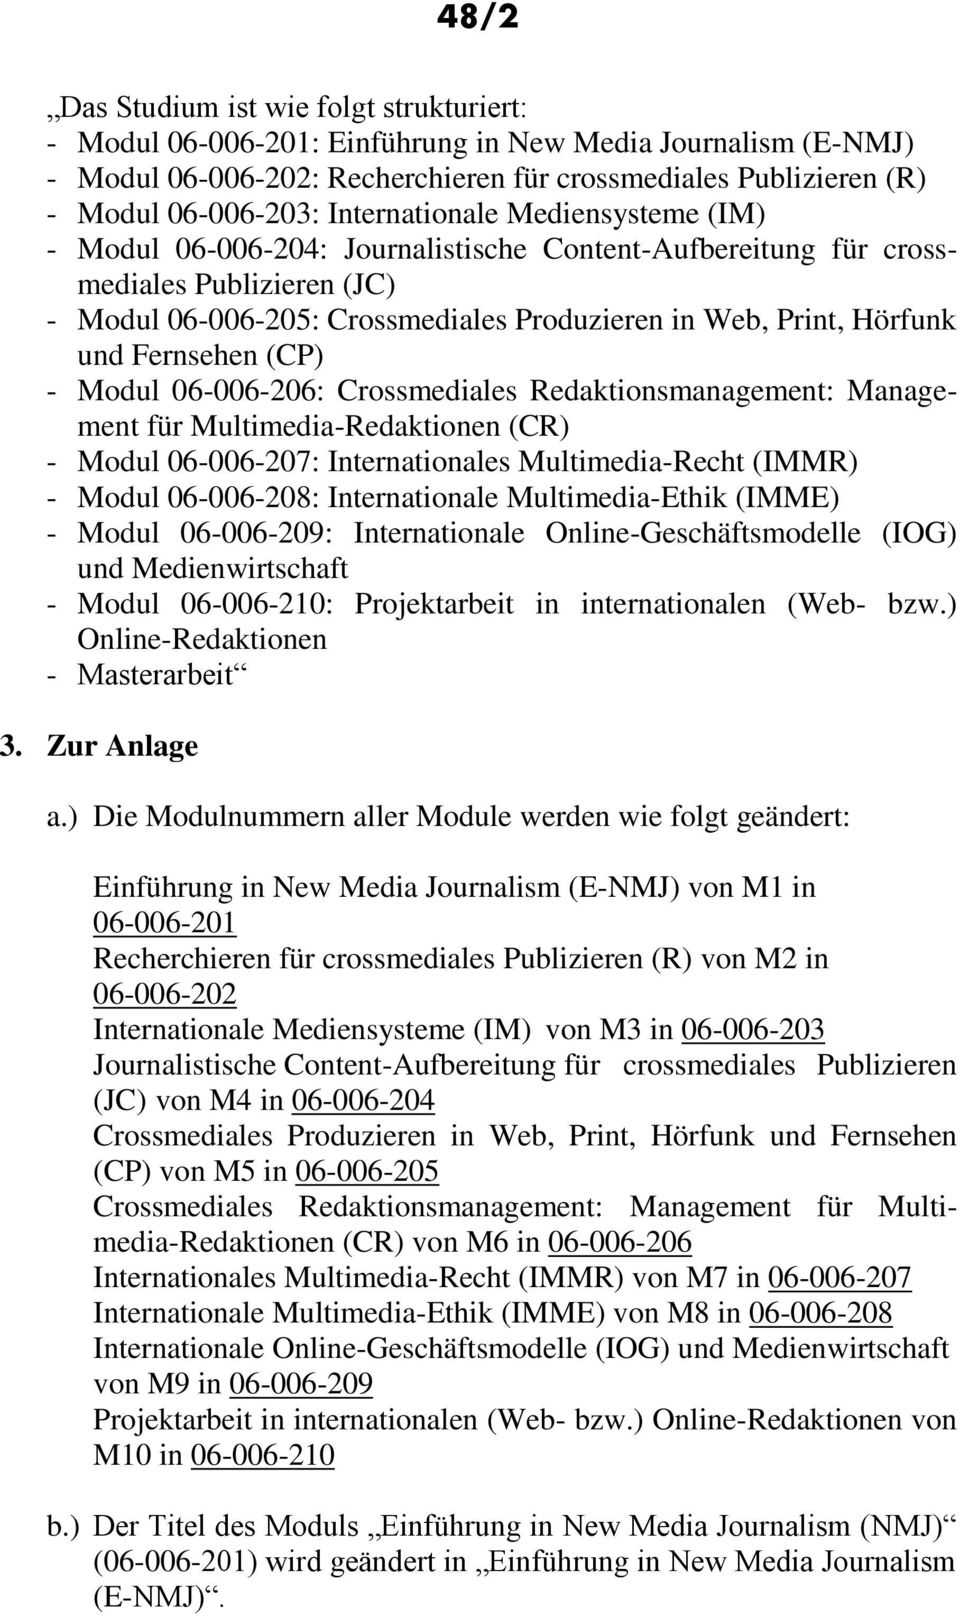 Fernsehen (CP) - Modul 06-006-206: Crossmediales Redaktionsmanagement: Management für Multimedia-Redaktionen (CR) - Modul 06-006-207: Internationales Multimedia-Recht (IMMR) - Modul 06-006-208: